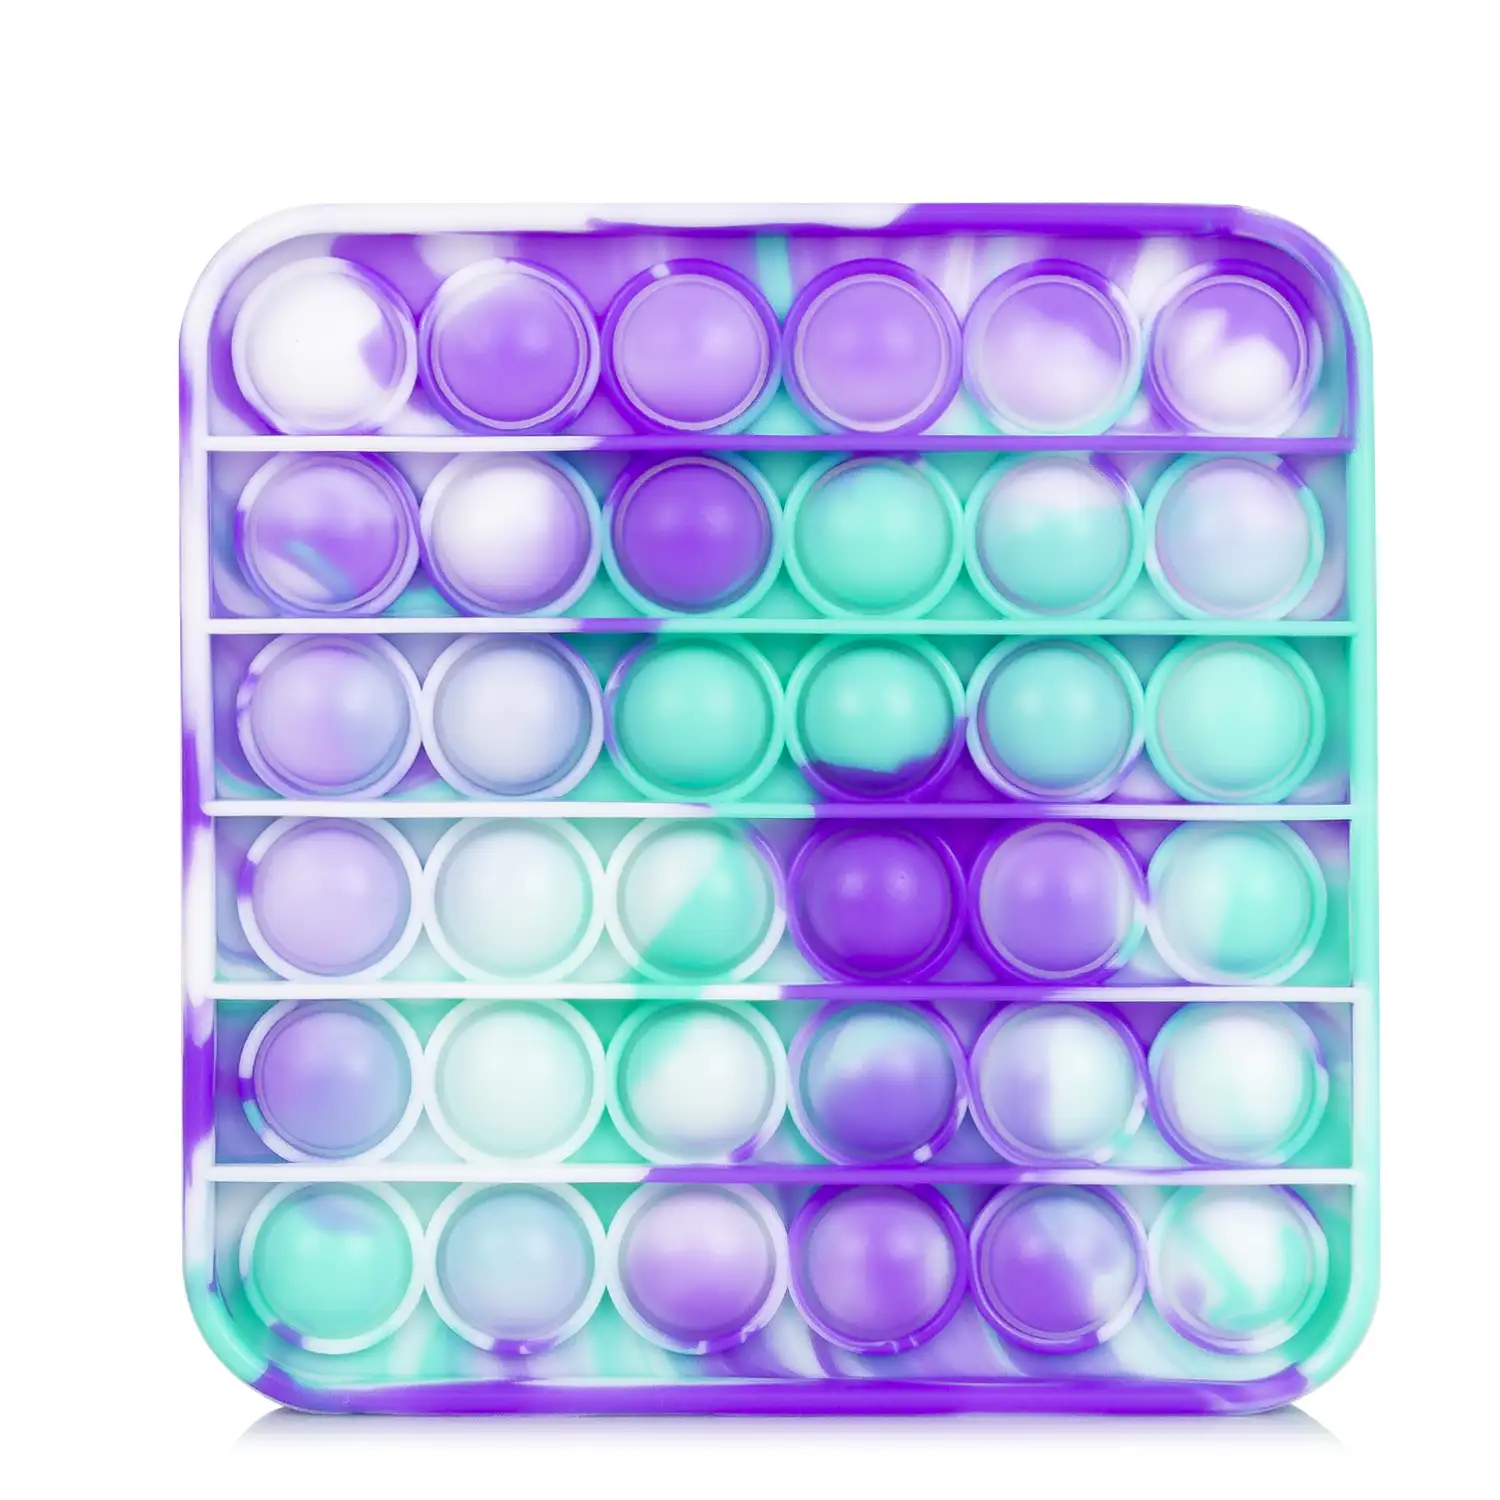 Bubble Pop It juguete sensitivo desestresante, burbujas de silicona para apretar y pulsar. Diseño cuadrado multicolor.